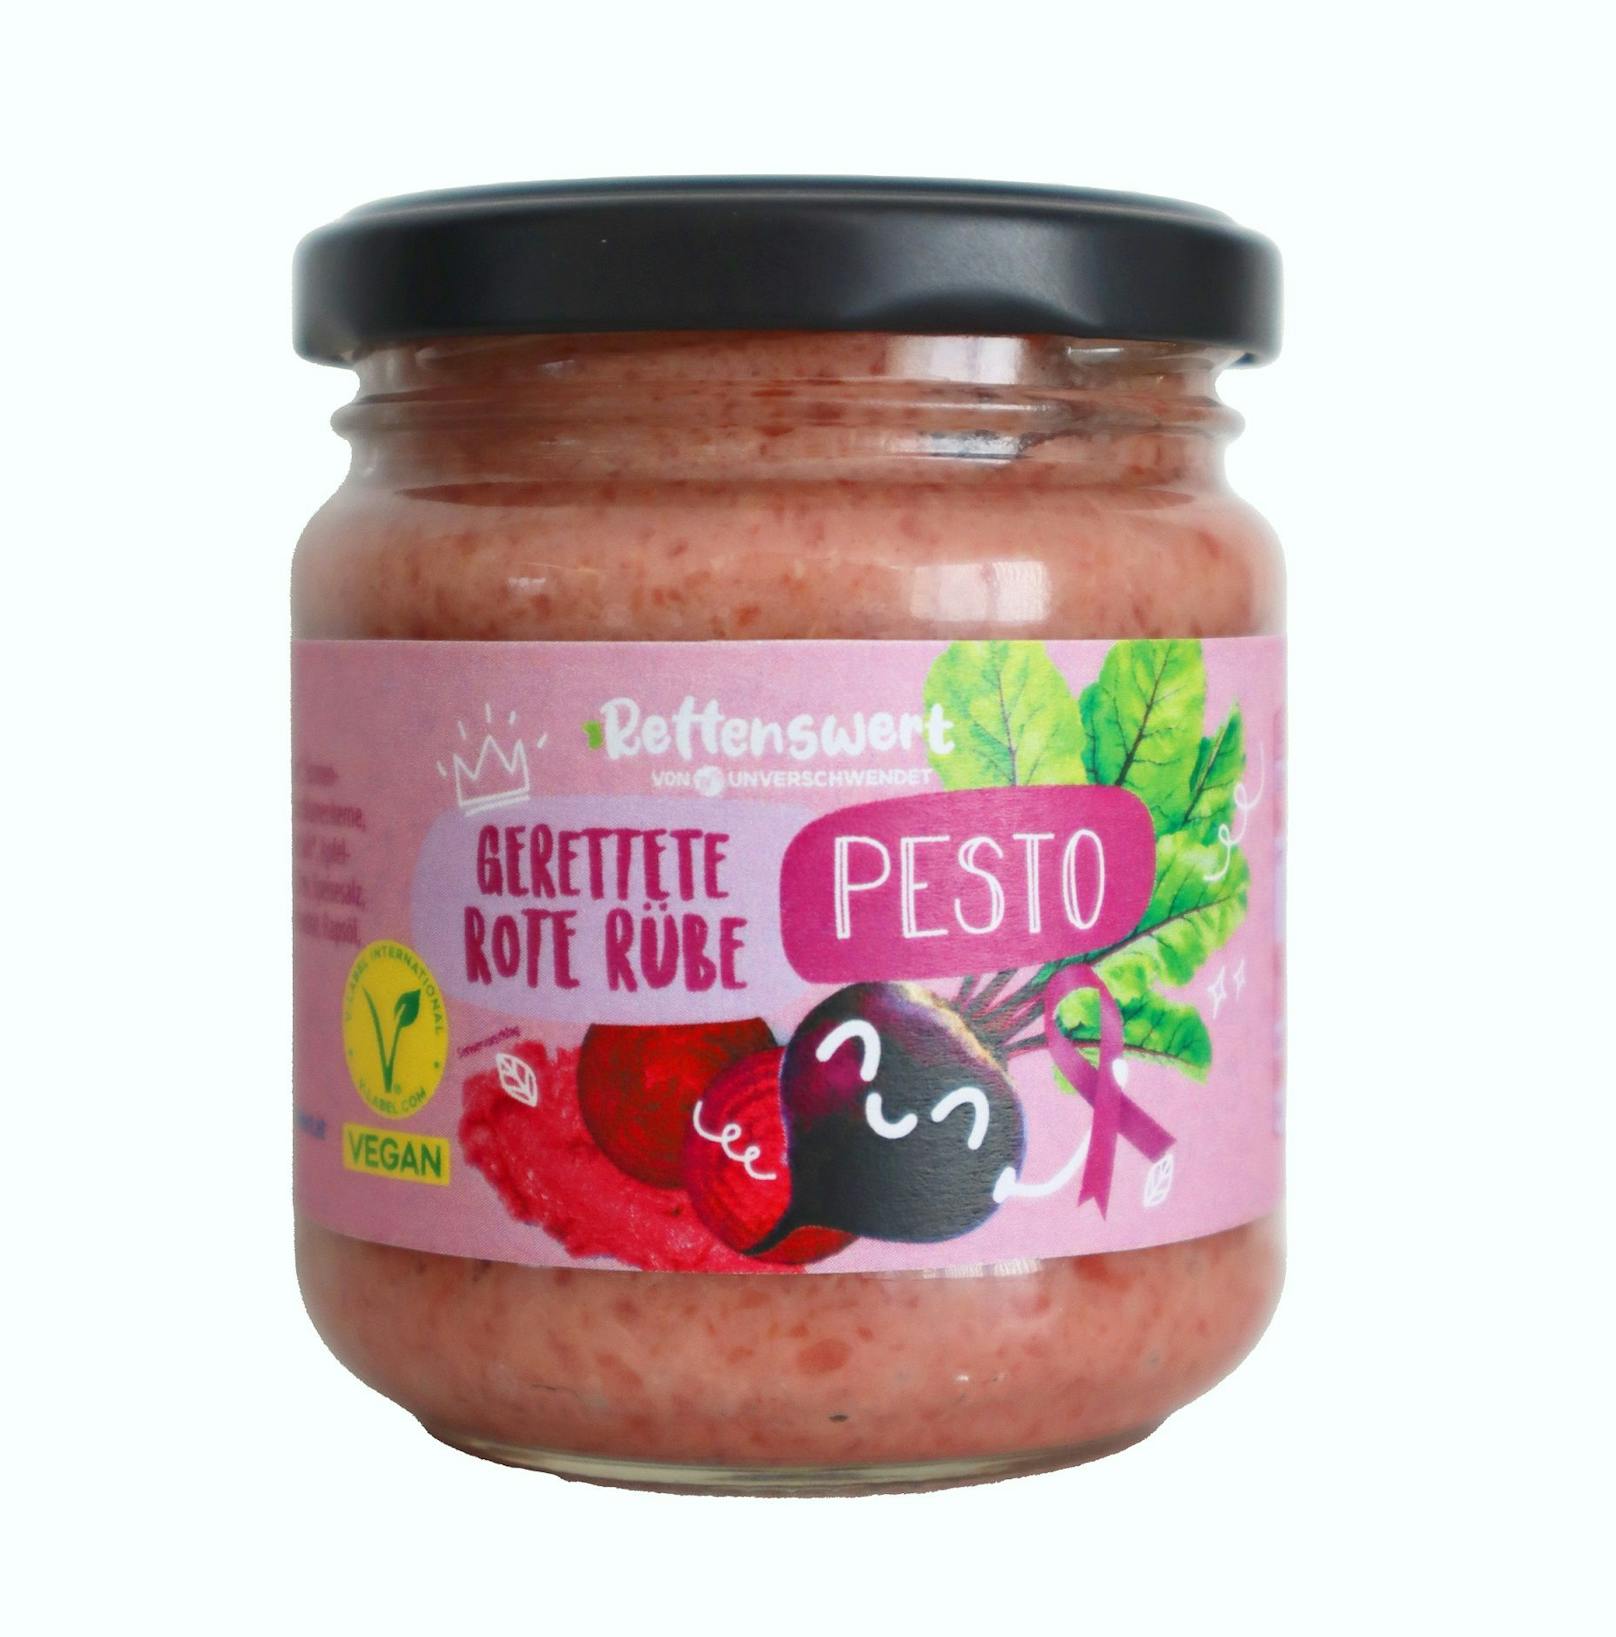 Zudem steht der pinke Eye Catcher aus geretteten Lebensmitteln, das Rote Rübe Pesto der nachhaltigen Eigenmarke "Rettenswert" in pinker Aufmachung zum Verbrauch.